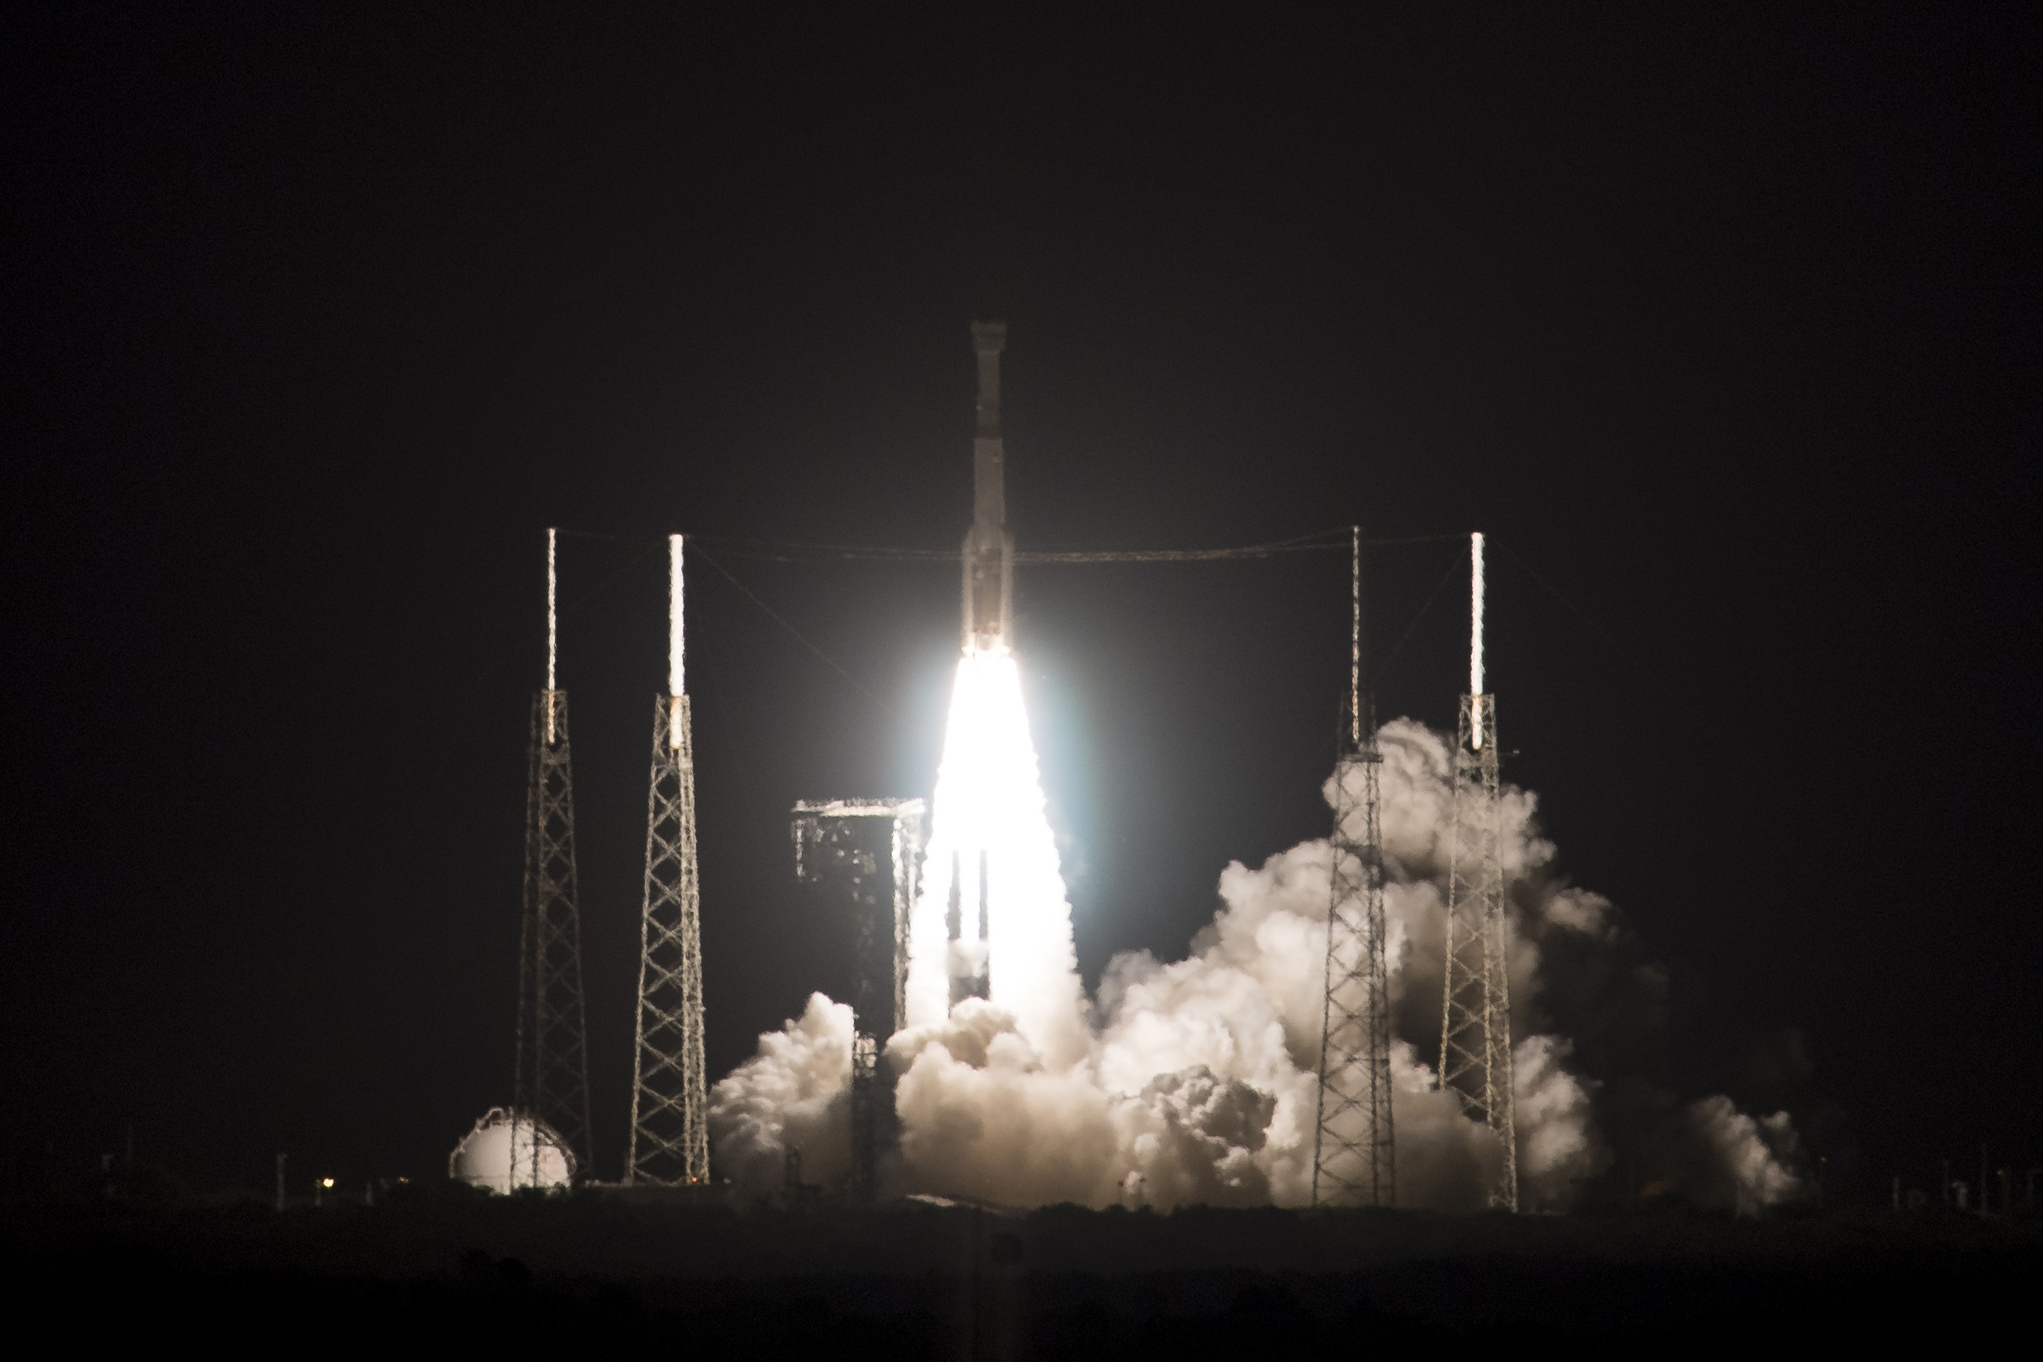 Na snímke kozmická loď Starliner spoločnosti Boeing, ktorá odštarovala na svoju prvú misiu k Medzinárodnej vesmírnej stanici (ISS) z Kennedyho vesmírneho strediska na Floride 20. decembra 2019. Na palube Starlineru nie je žiadna posádka. Vesmírna loď priletí k ISS v sobotu a šiestim astronautom na ISS dovezie okrem iného vianočné pochúťky a darčeky. Starliner sa vráti na Zem 28. decembra. V oblasti Nového Mexika pristane pomocou padákov.